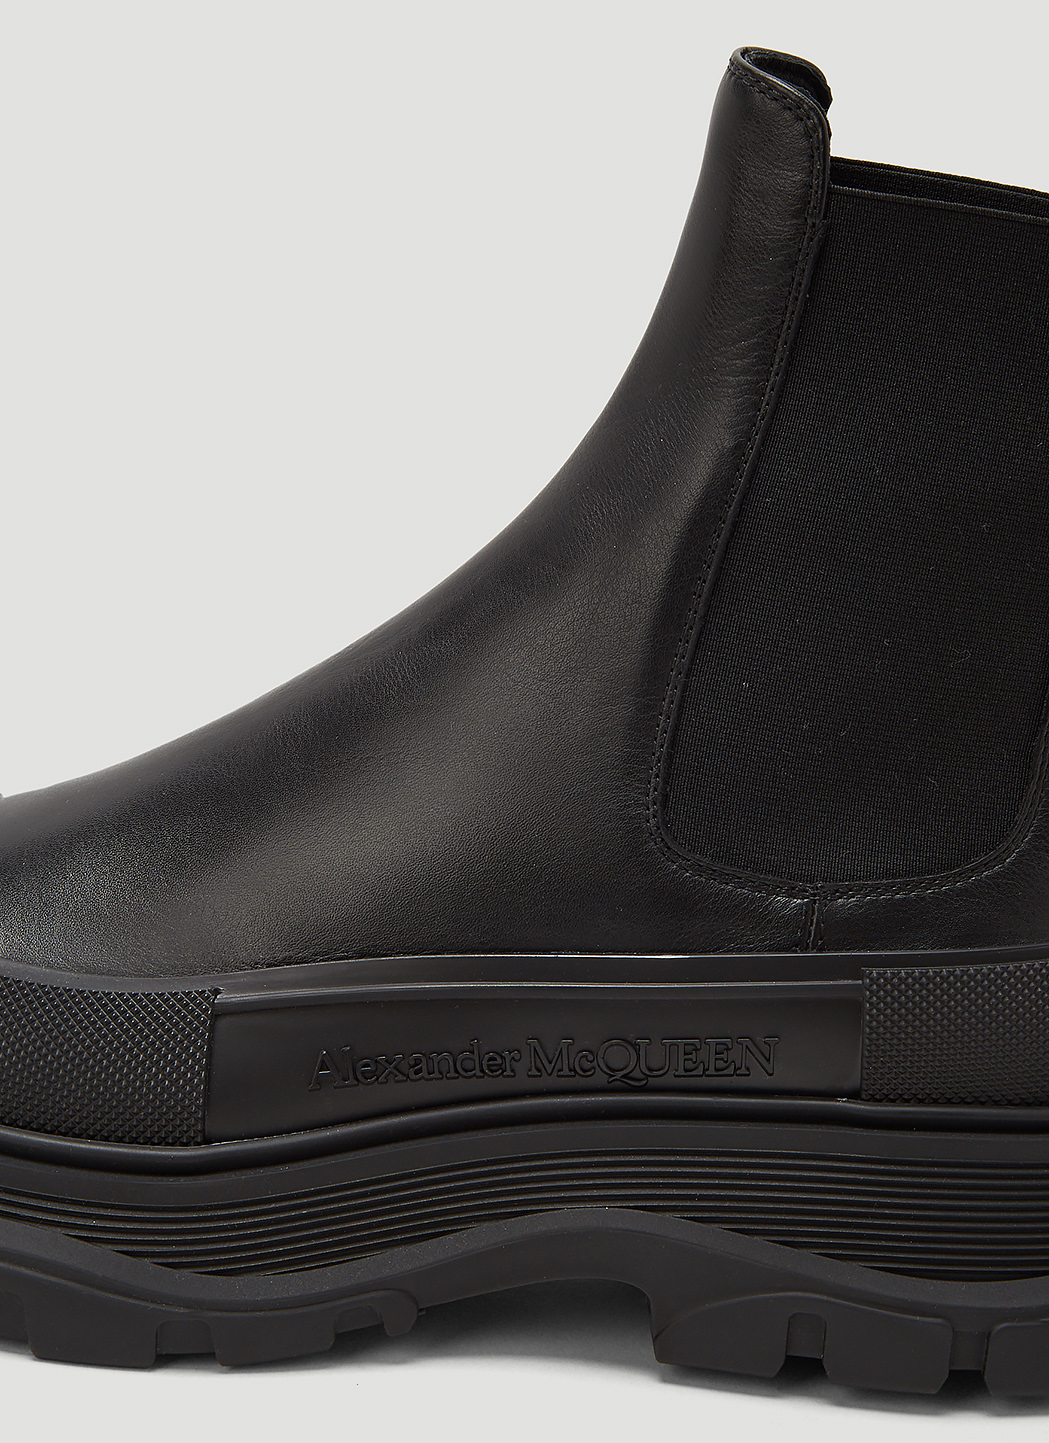 Alexander McQueen Men's Tread Slick Chelsea Boots in Black | LN-CC